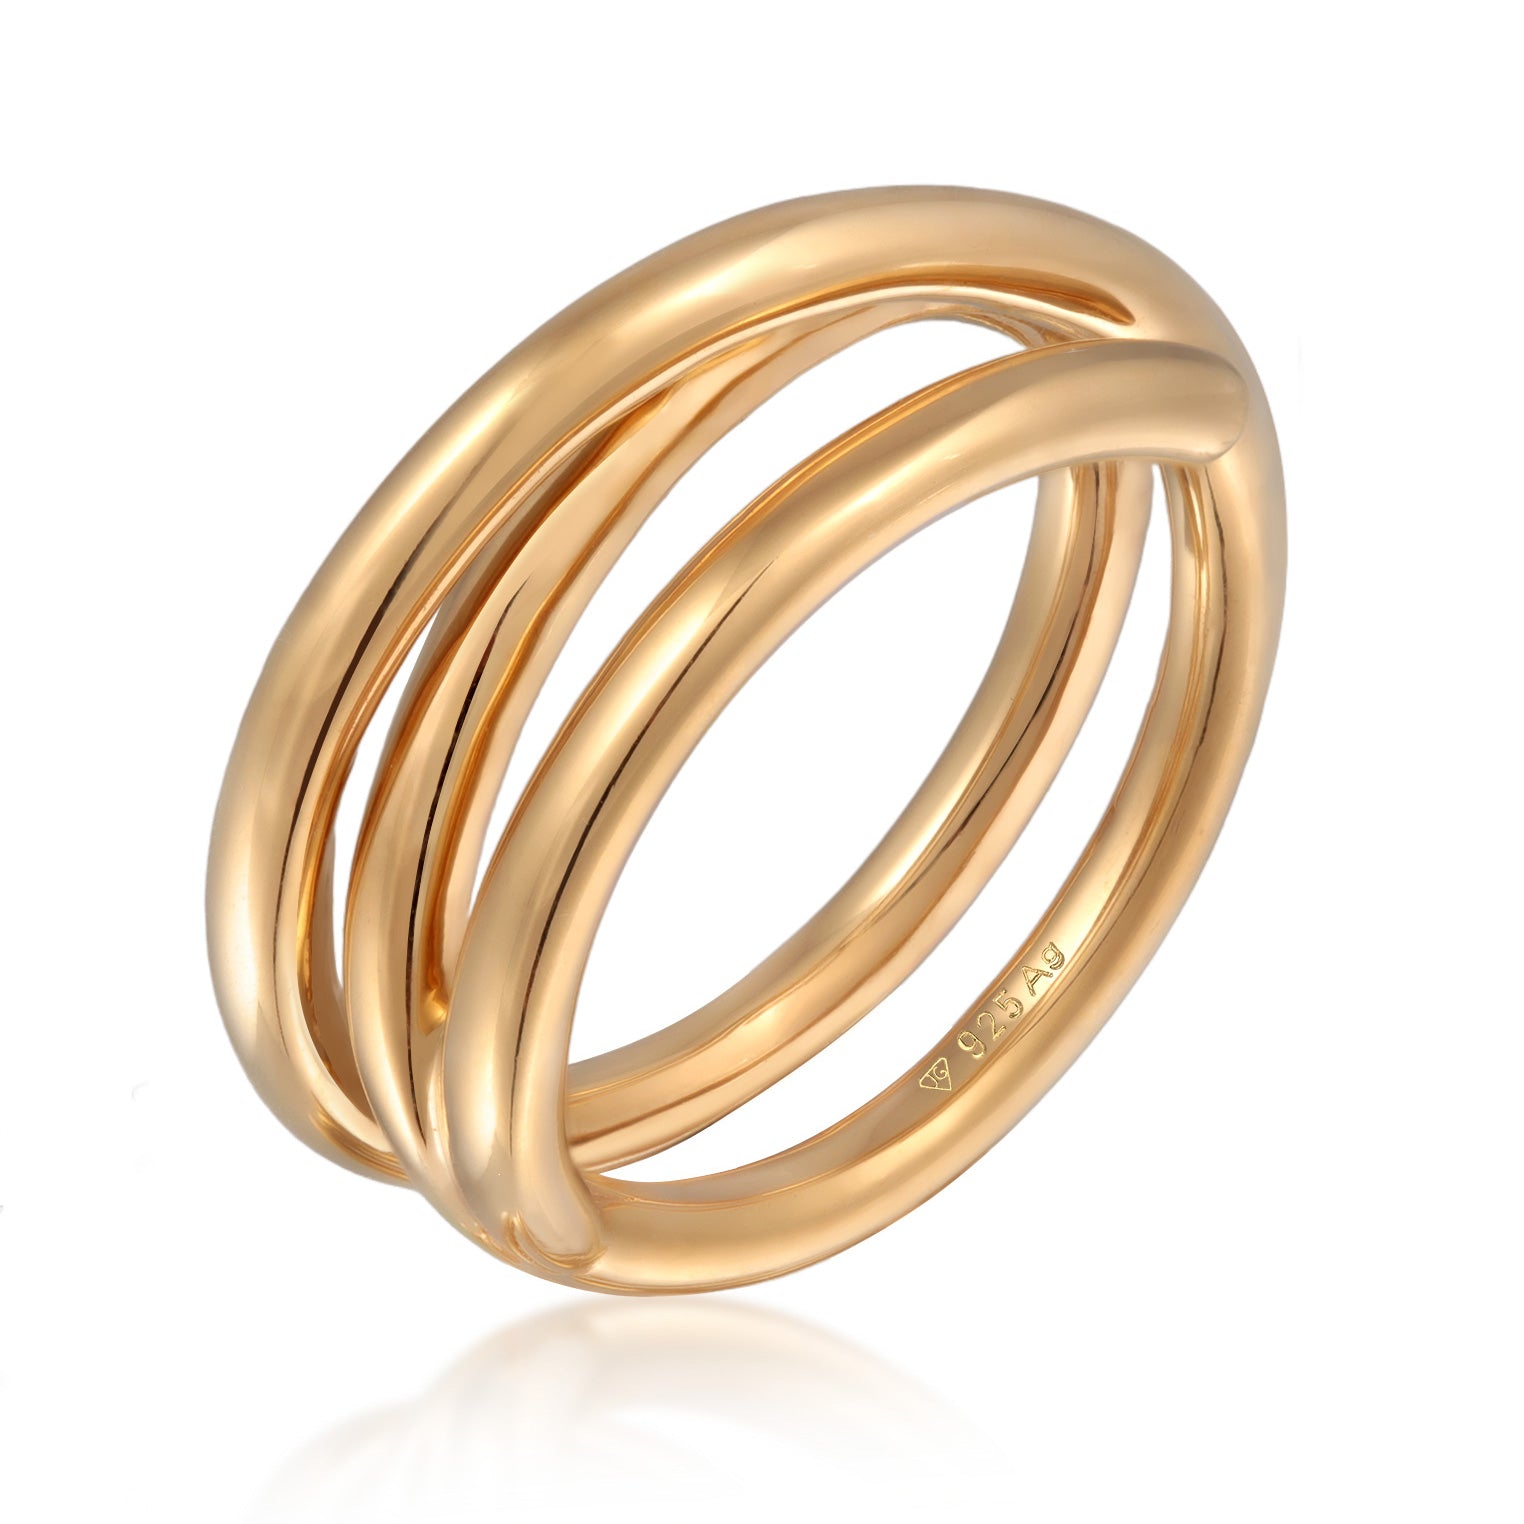 Gold - Elli PREMIUM | Spiral Design Modischer Chunky Look 925 Silber vergoldet